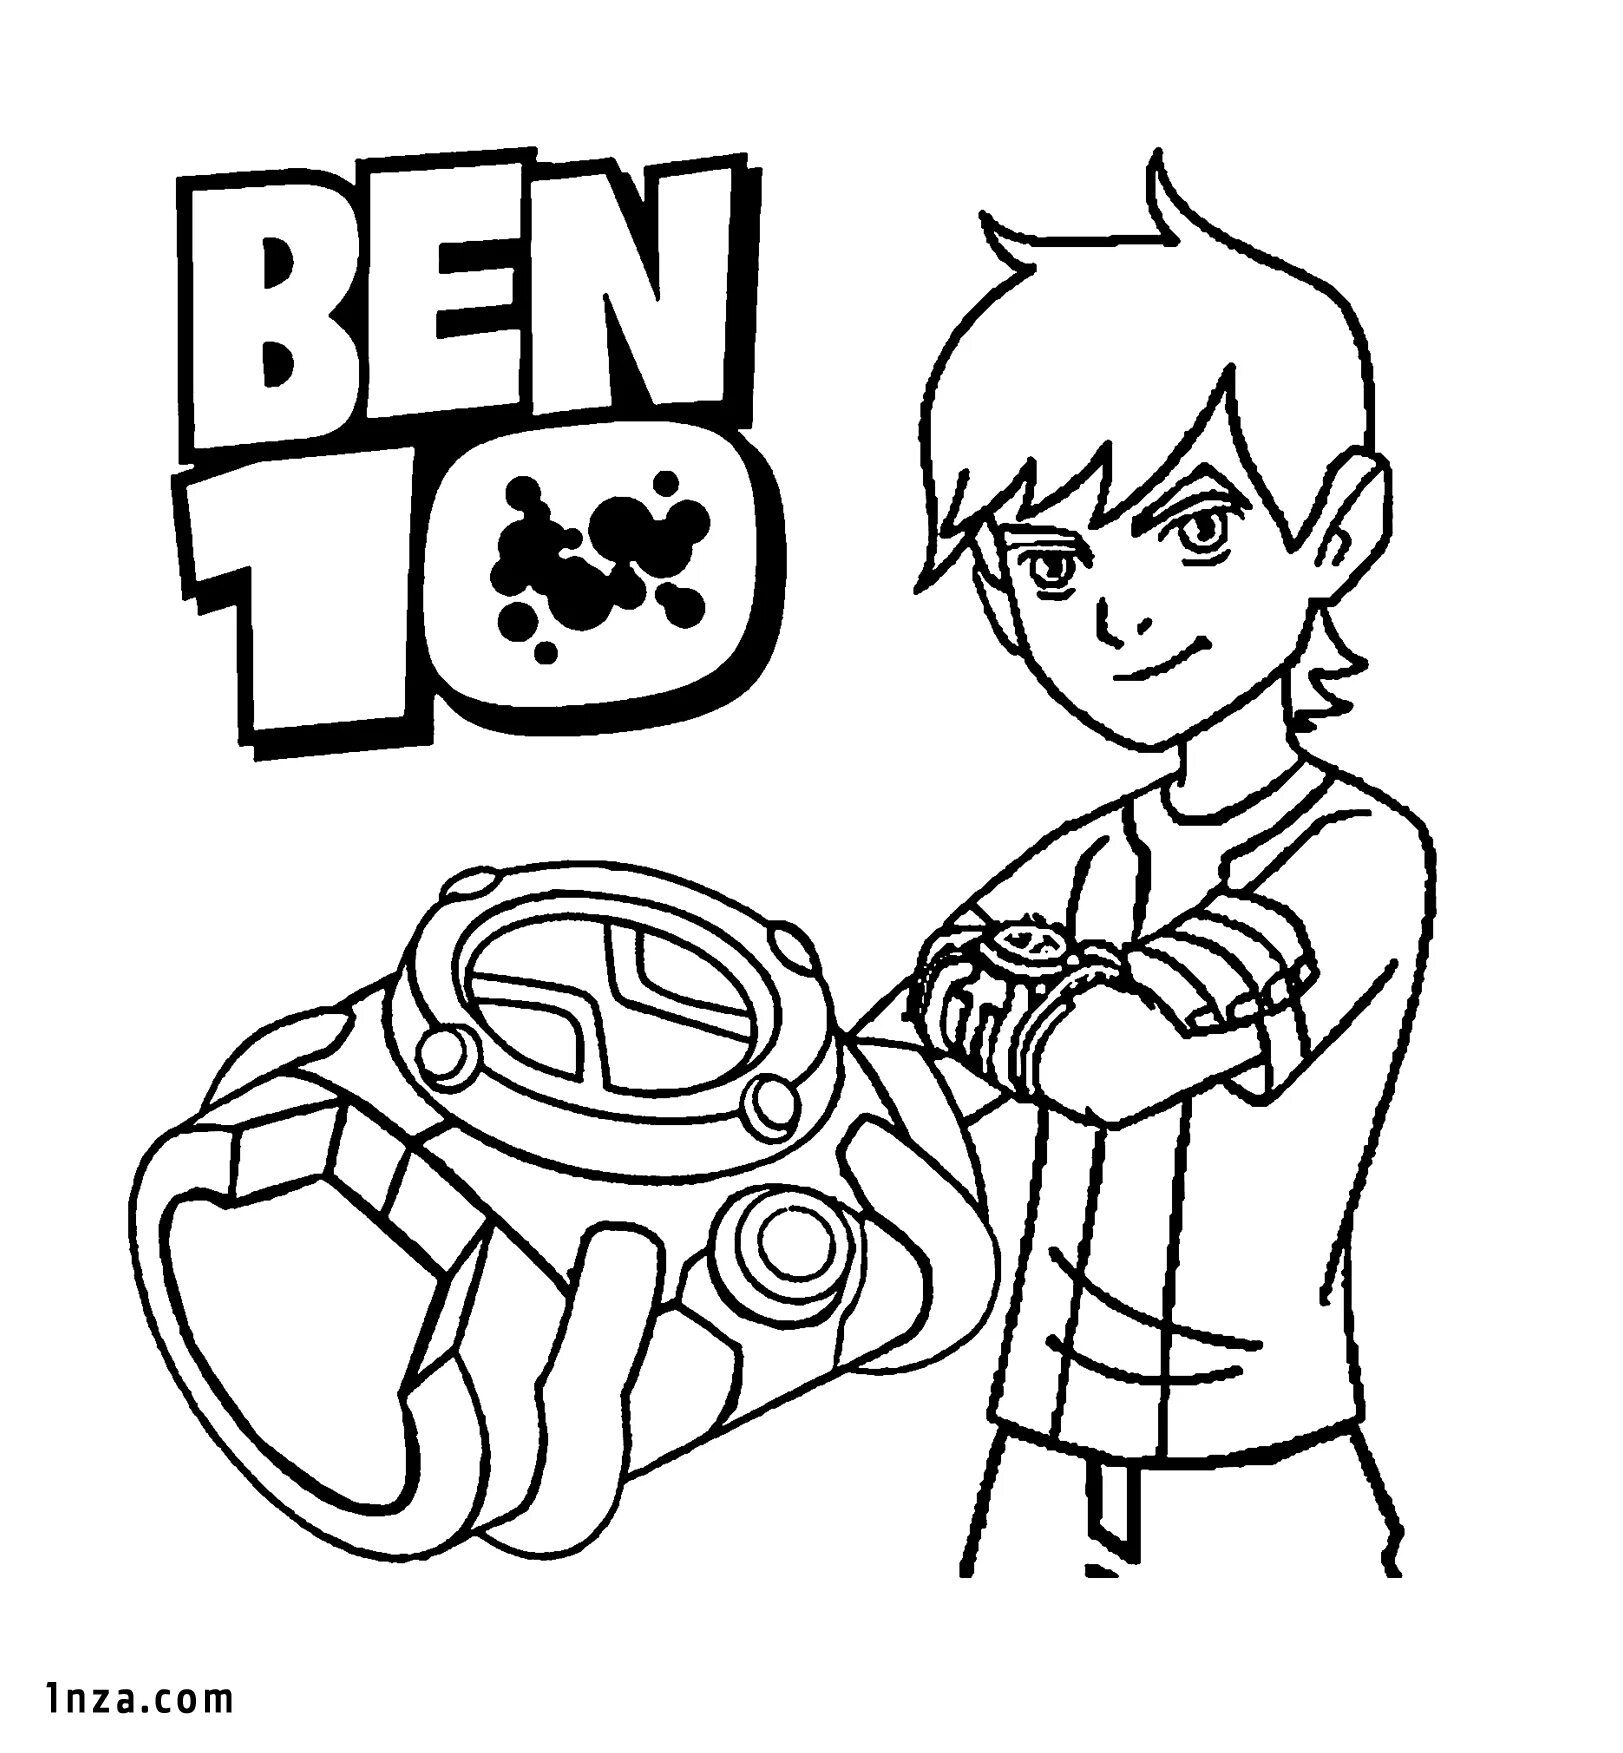 Игра Бен 10: Раскраски омниверс